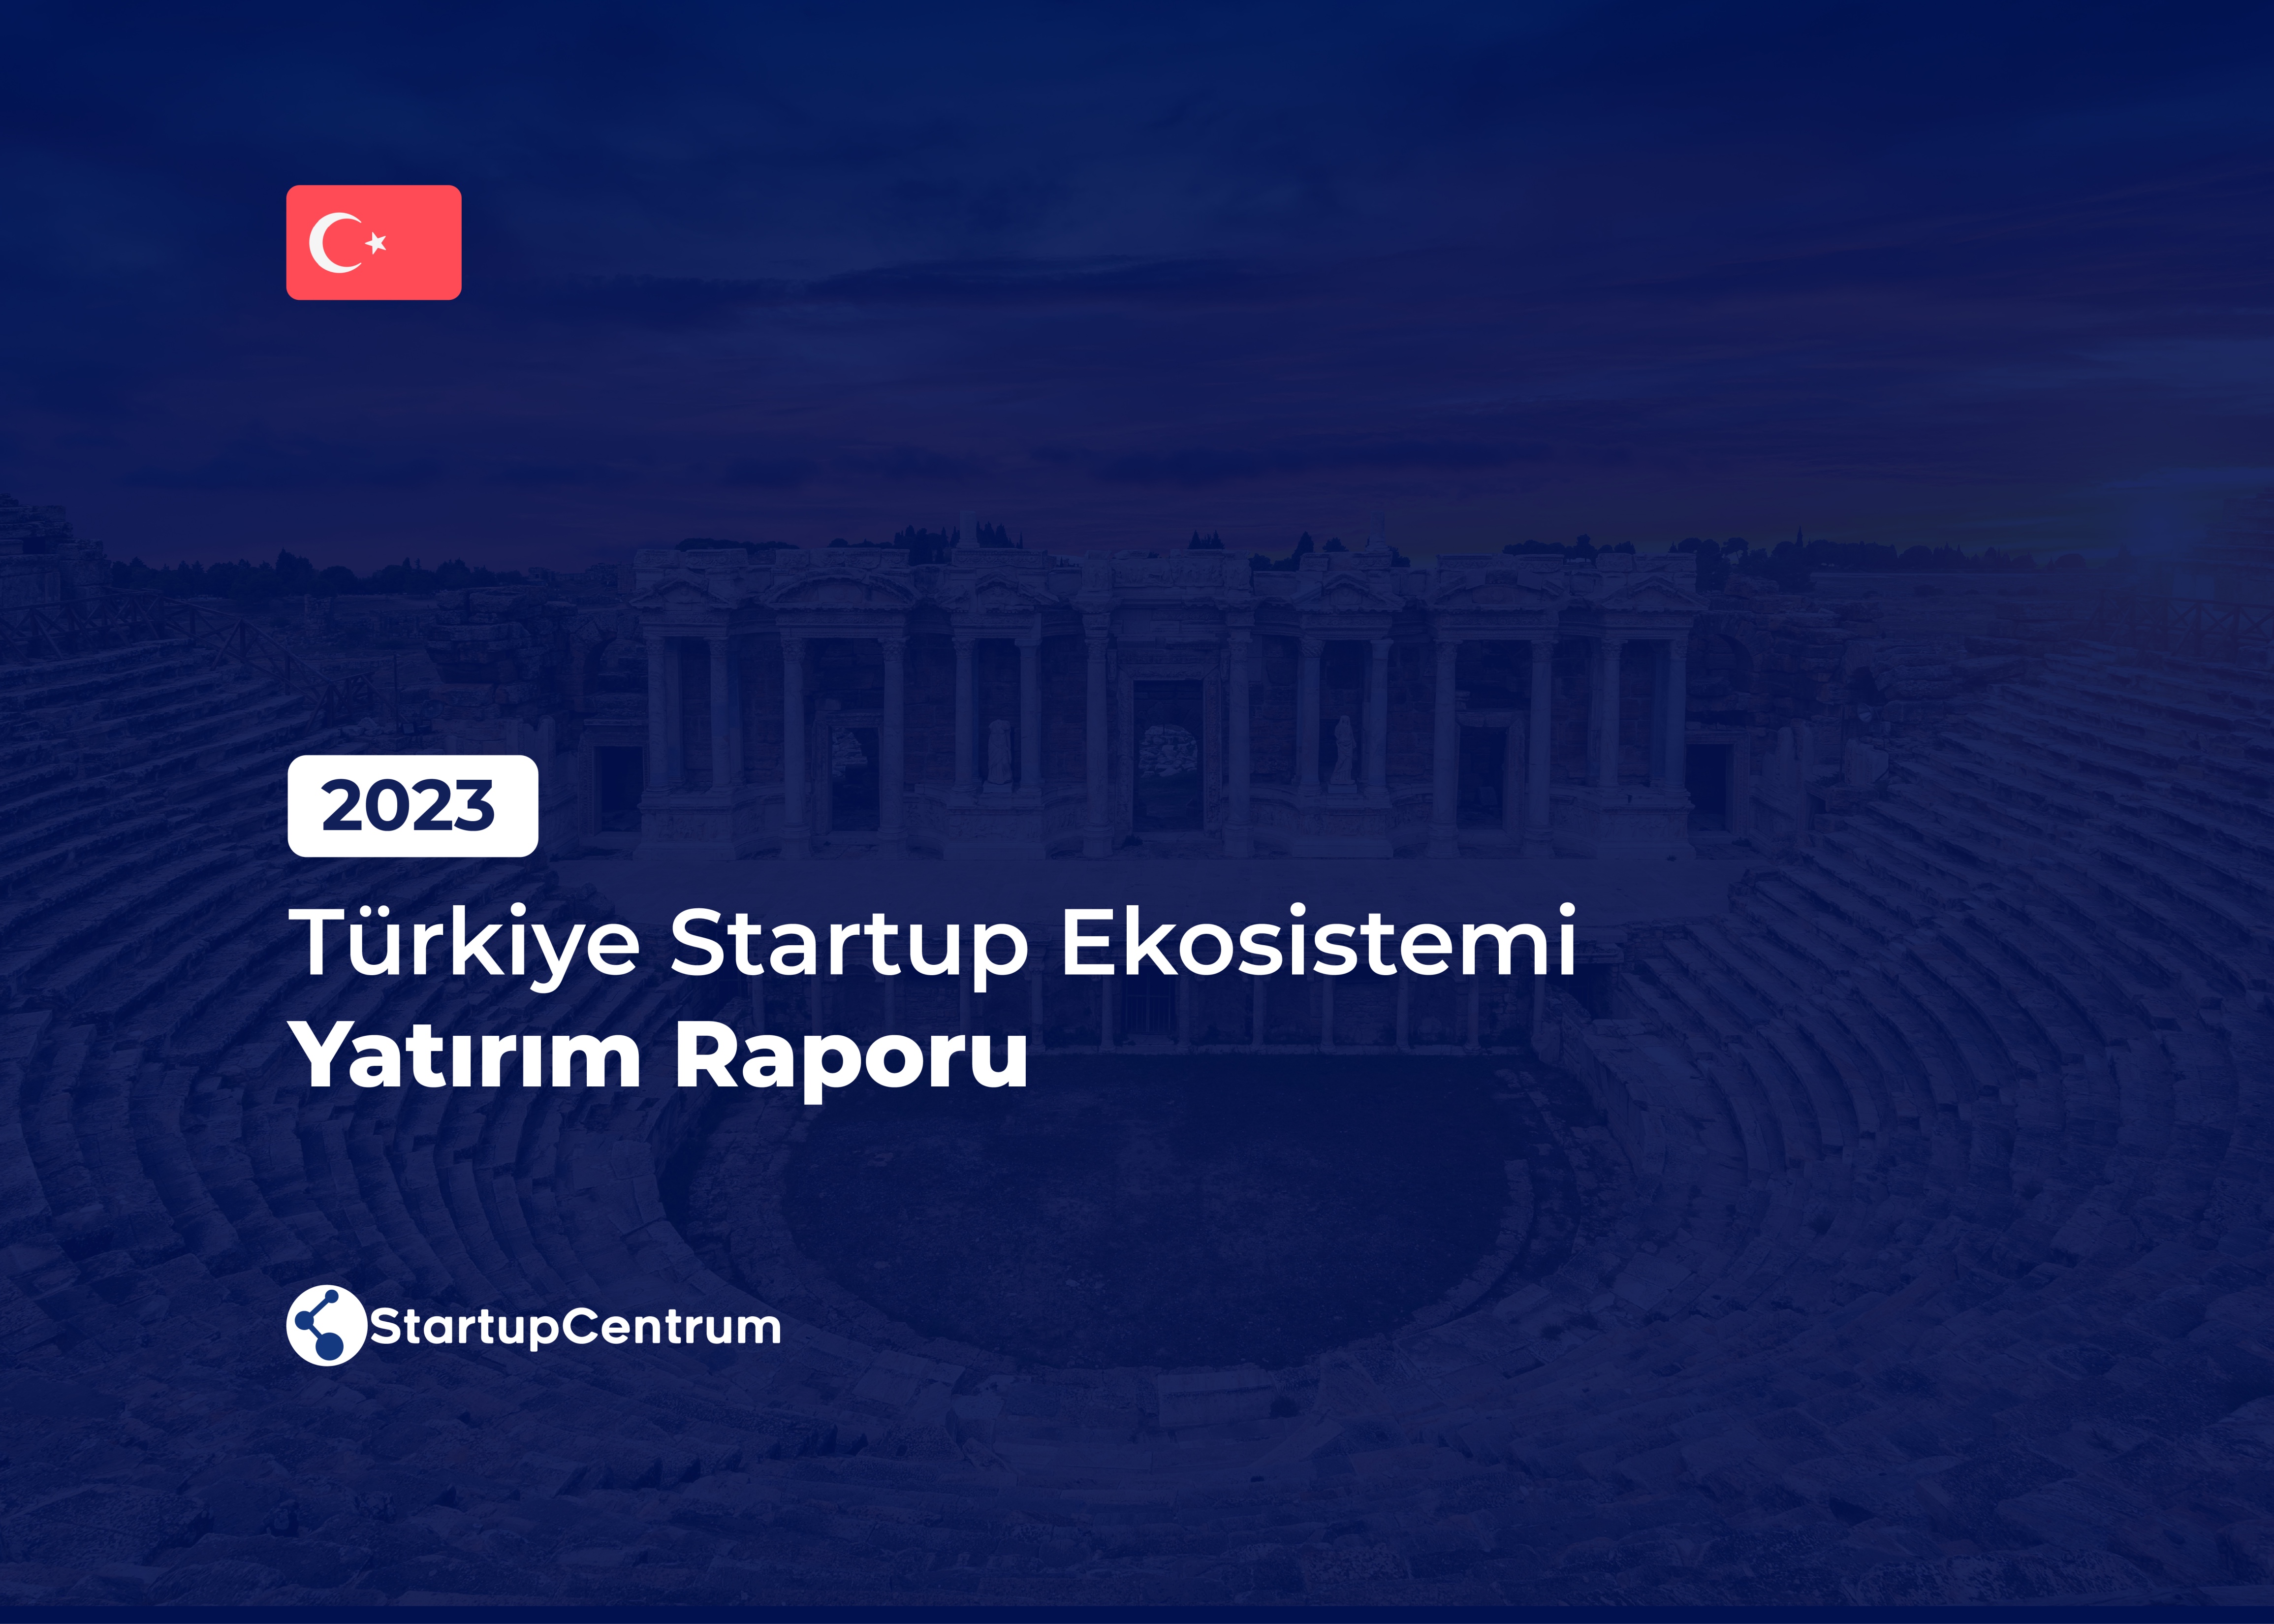 2023 - Türkiye Startup Ekosistemi Yatırım Raporu Cover Image